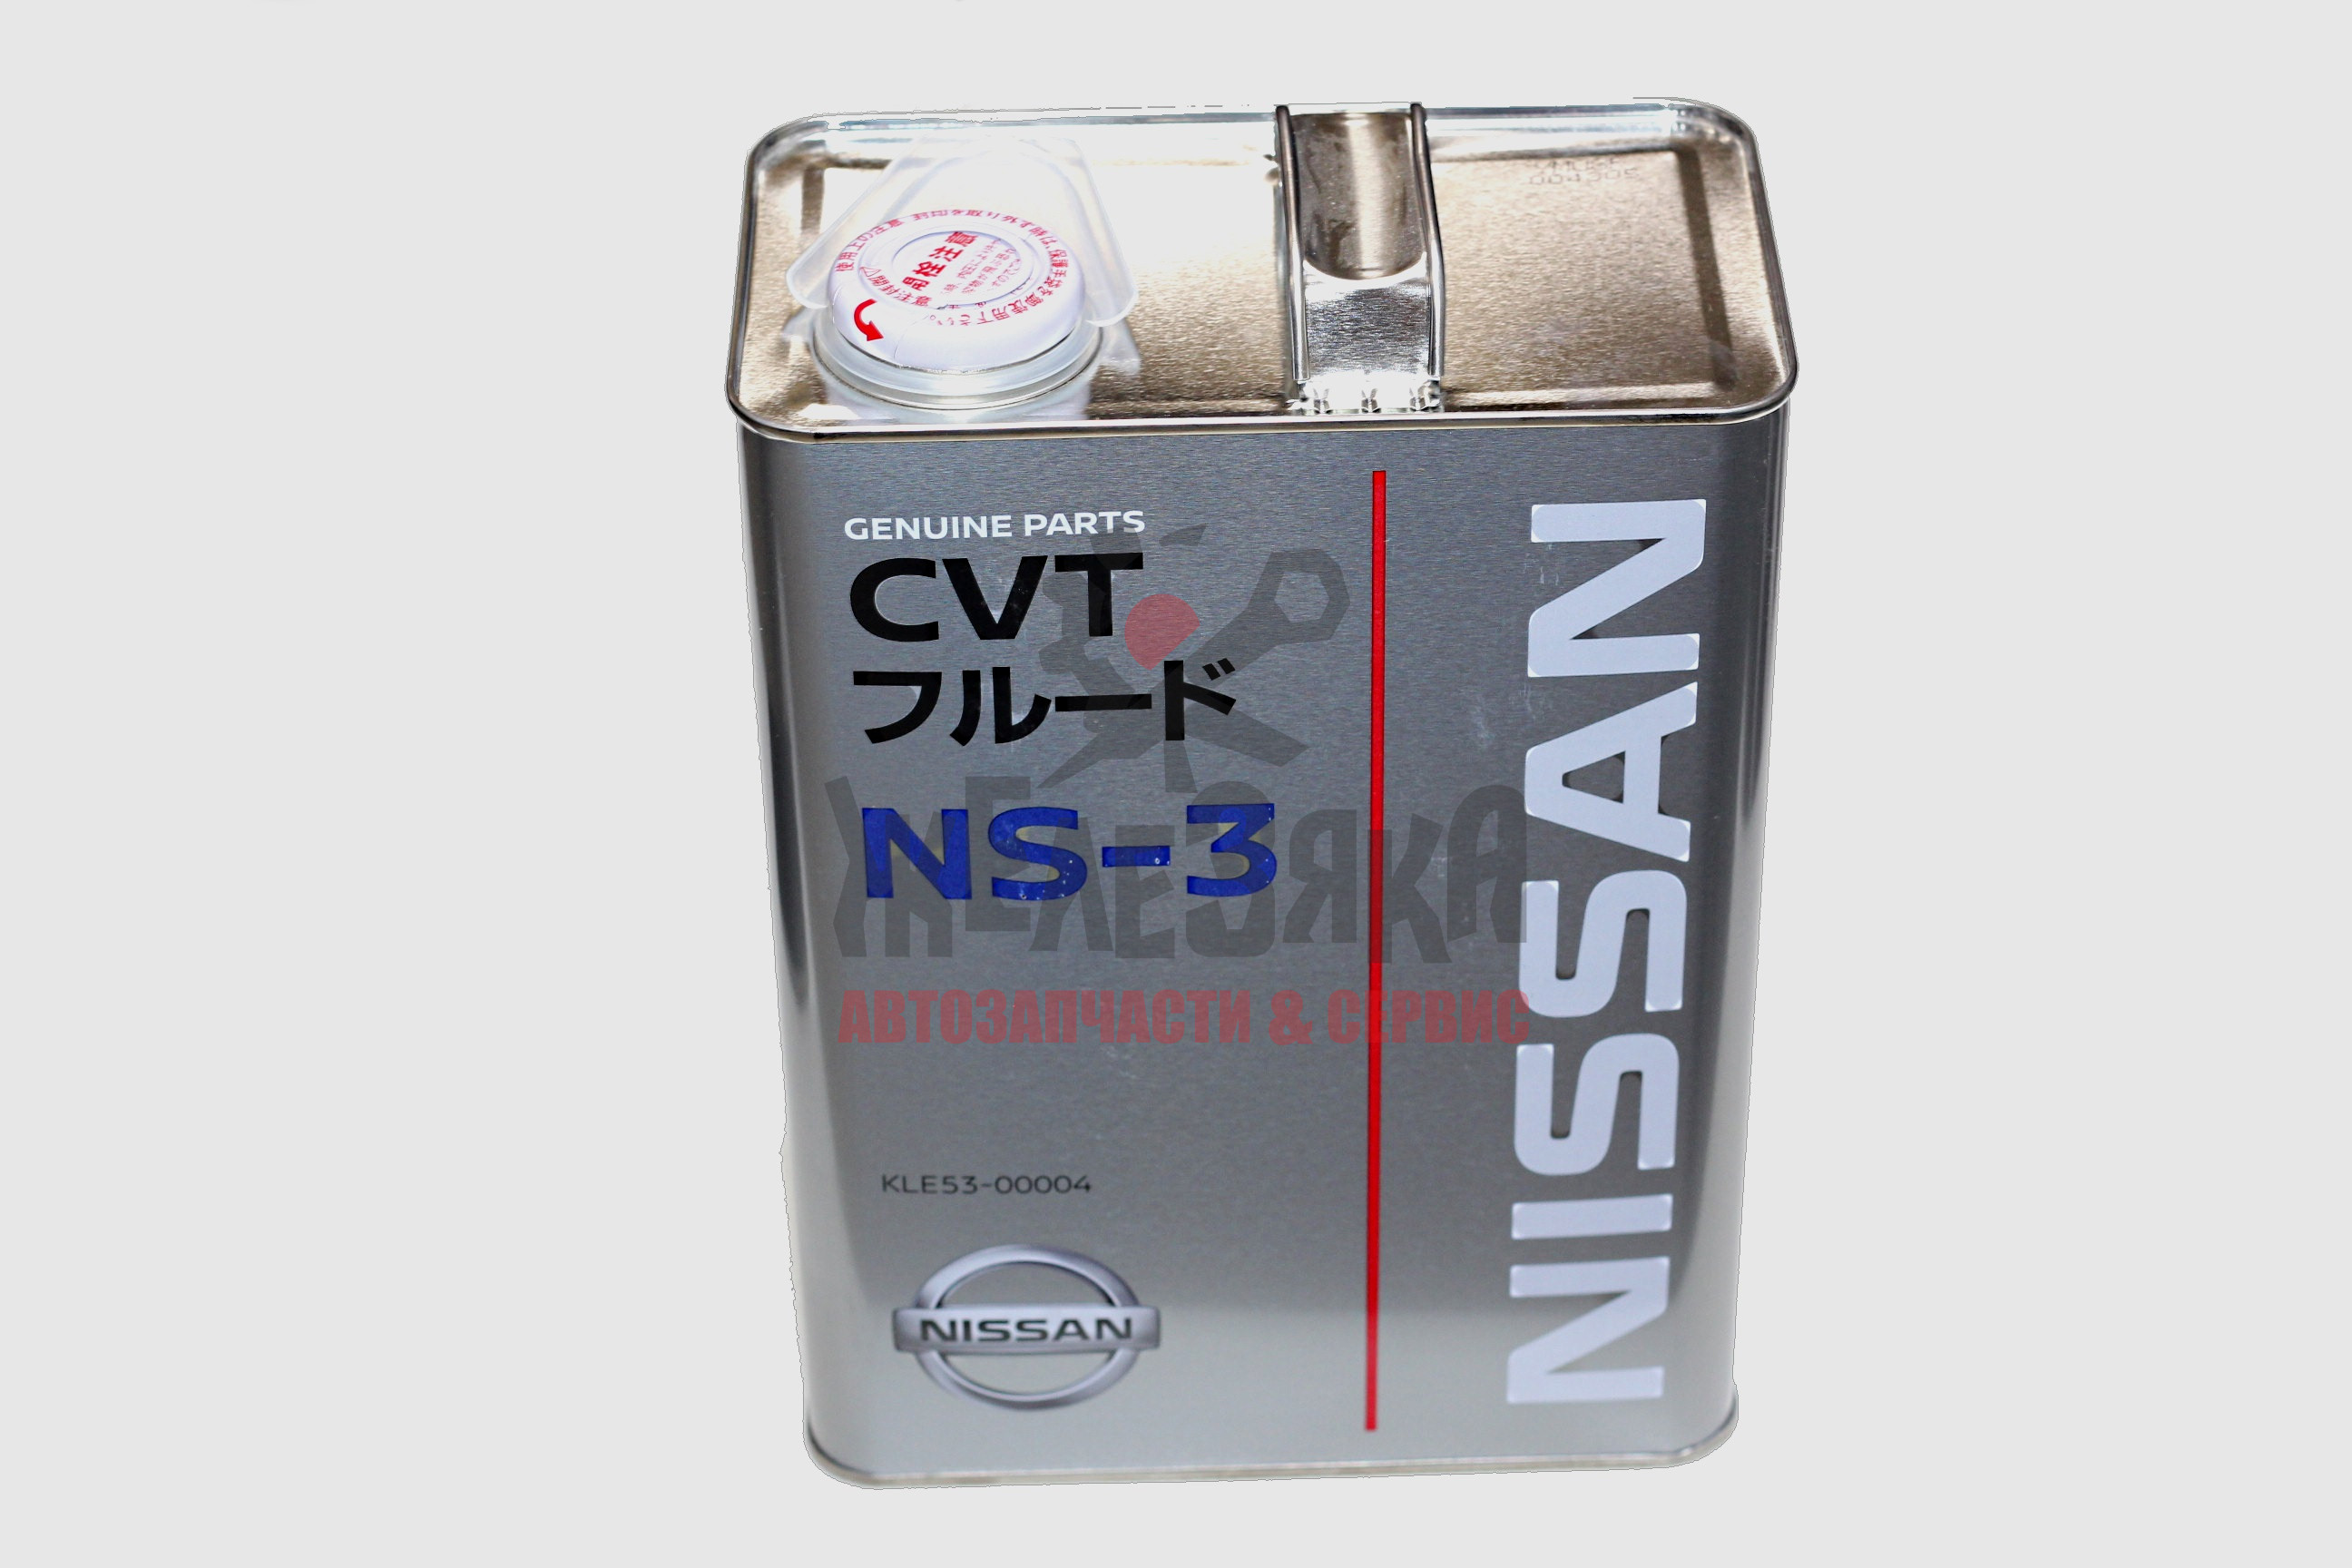 Жидкость CVT NISSAN CVT FLUID NS-3/ 4 л.